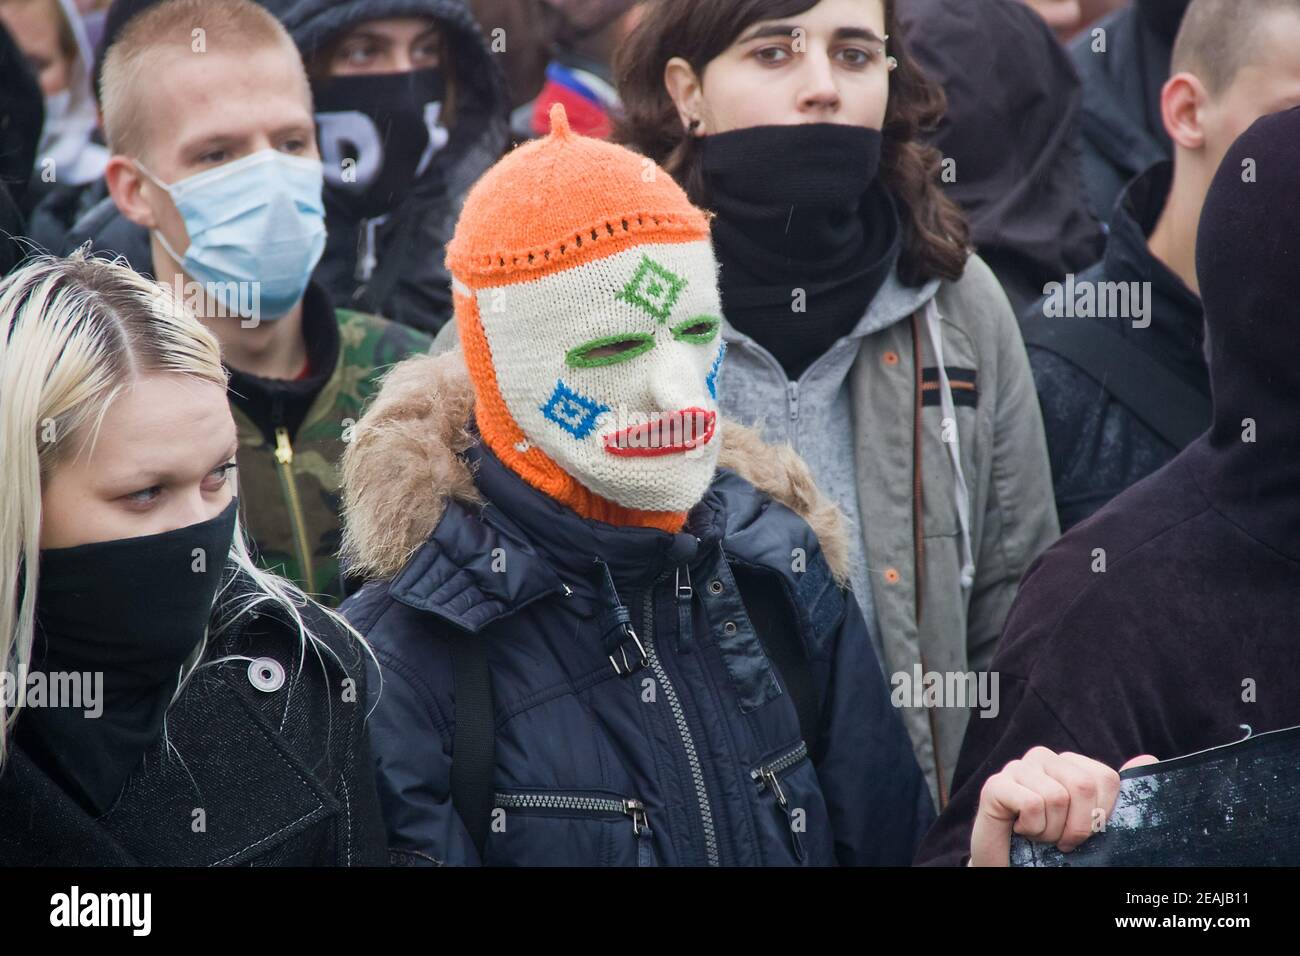 04.11.2010. Russie, Moscou : marche annuelle des nationalistes russes à Moscou (marche russe). Protester contre les jeunes dans les masques. Banque D'Images